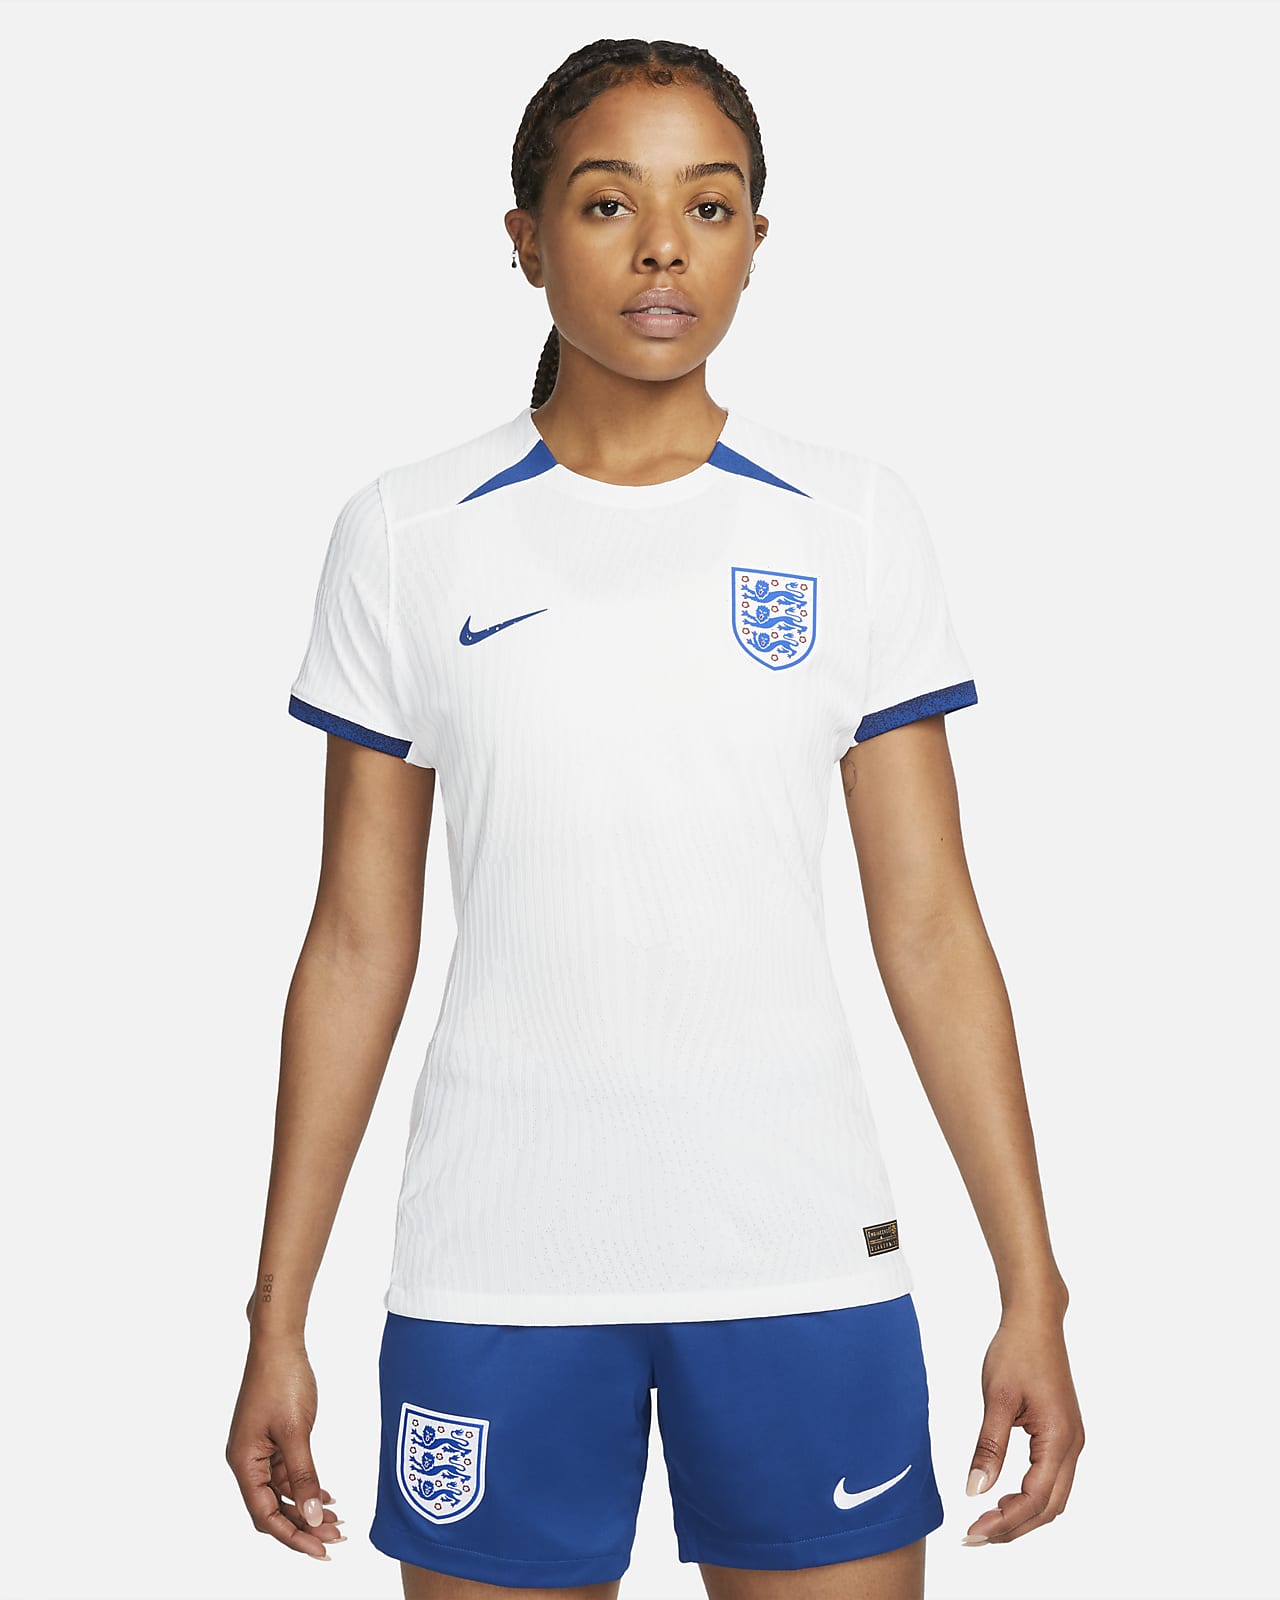 Wijde selectie Luchtvaartmaatschappijen overzee England 2023 Match Home Women's Nike Dri-FIT ADV Football Shirt. Nike UK